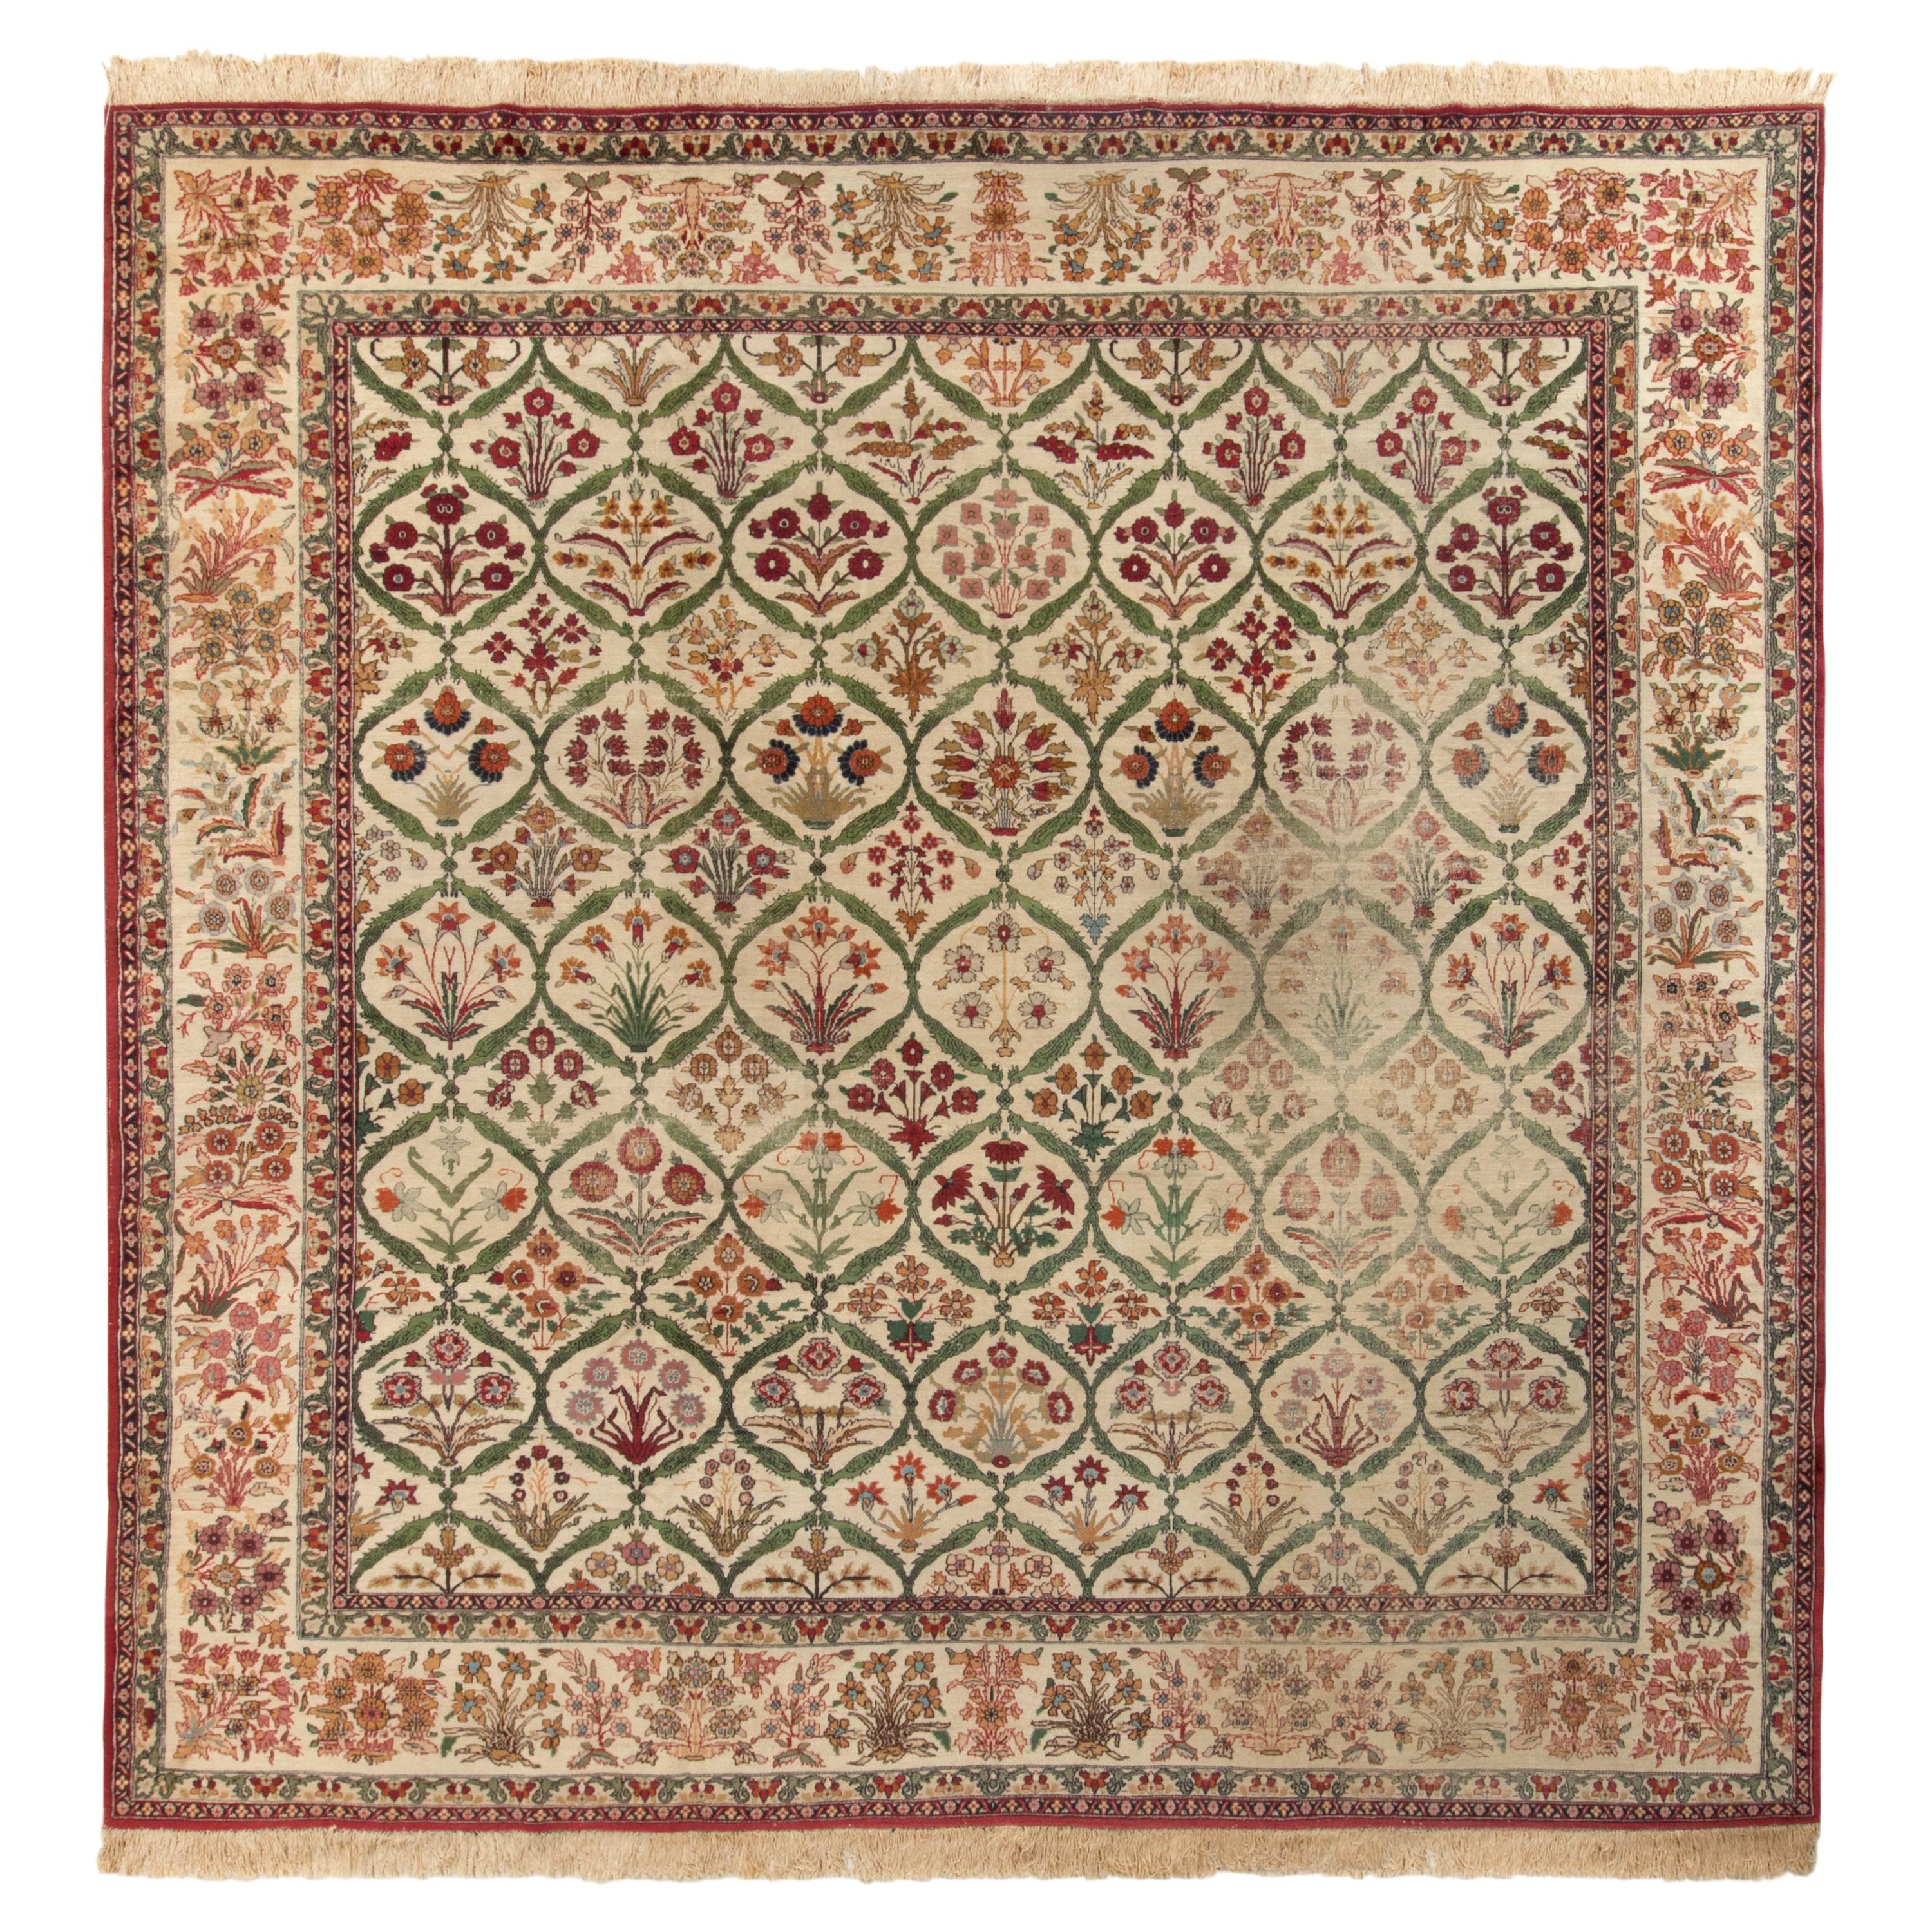 Handgeknüpfter antiker Mogul-Teppich in Beige mit grünem Blumenmuster von Teppich & Kelim